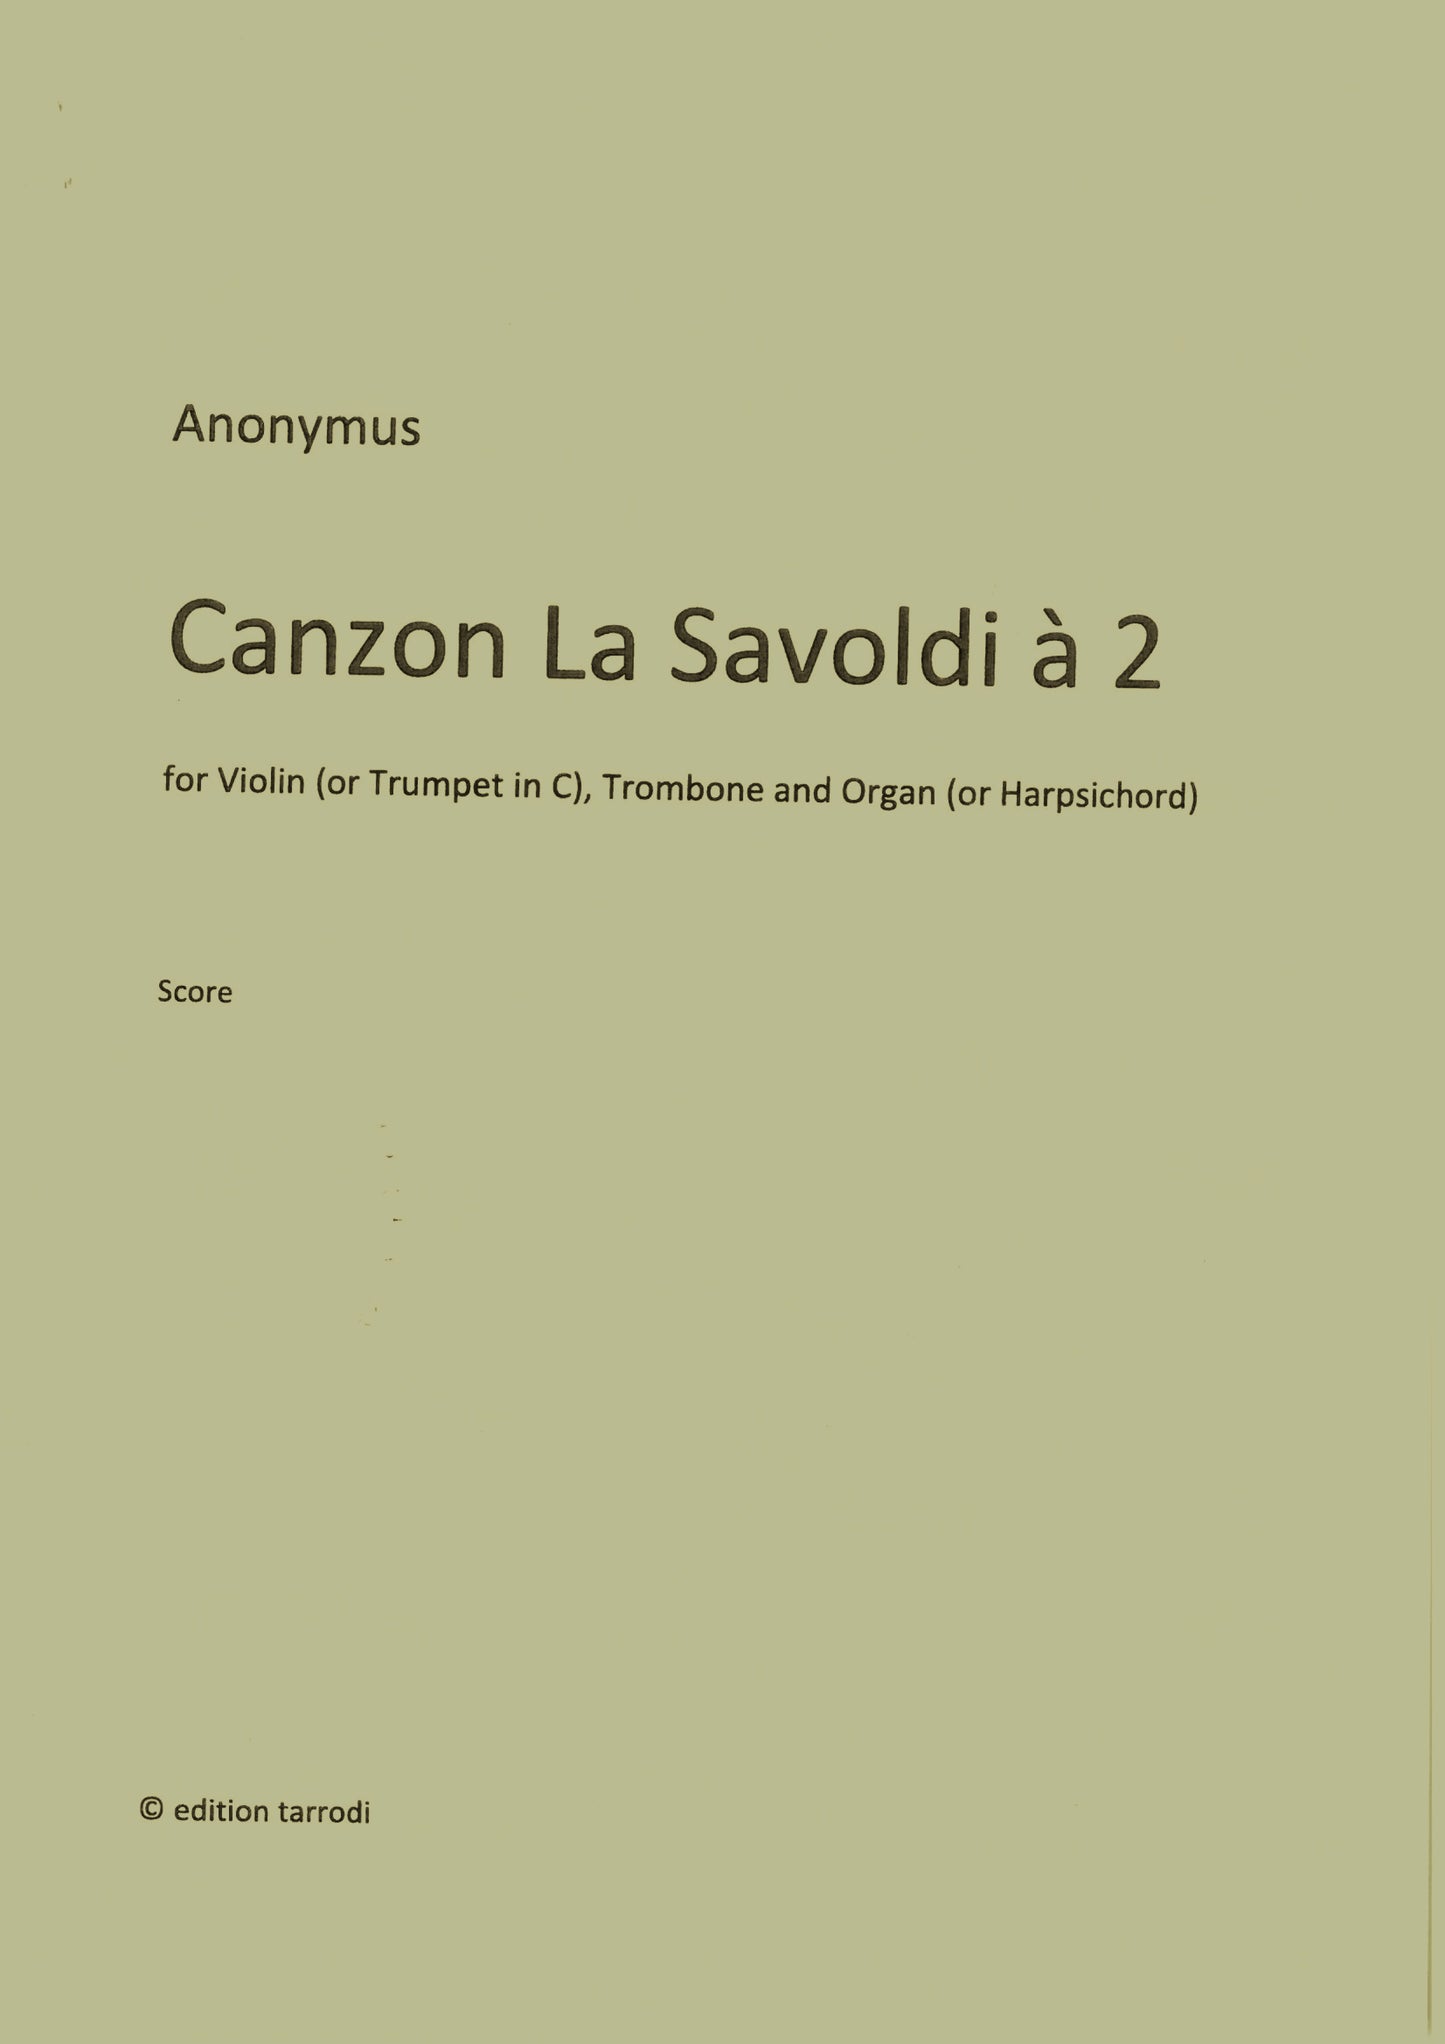 Anonymus - Canzon La Savoldi à 2